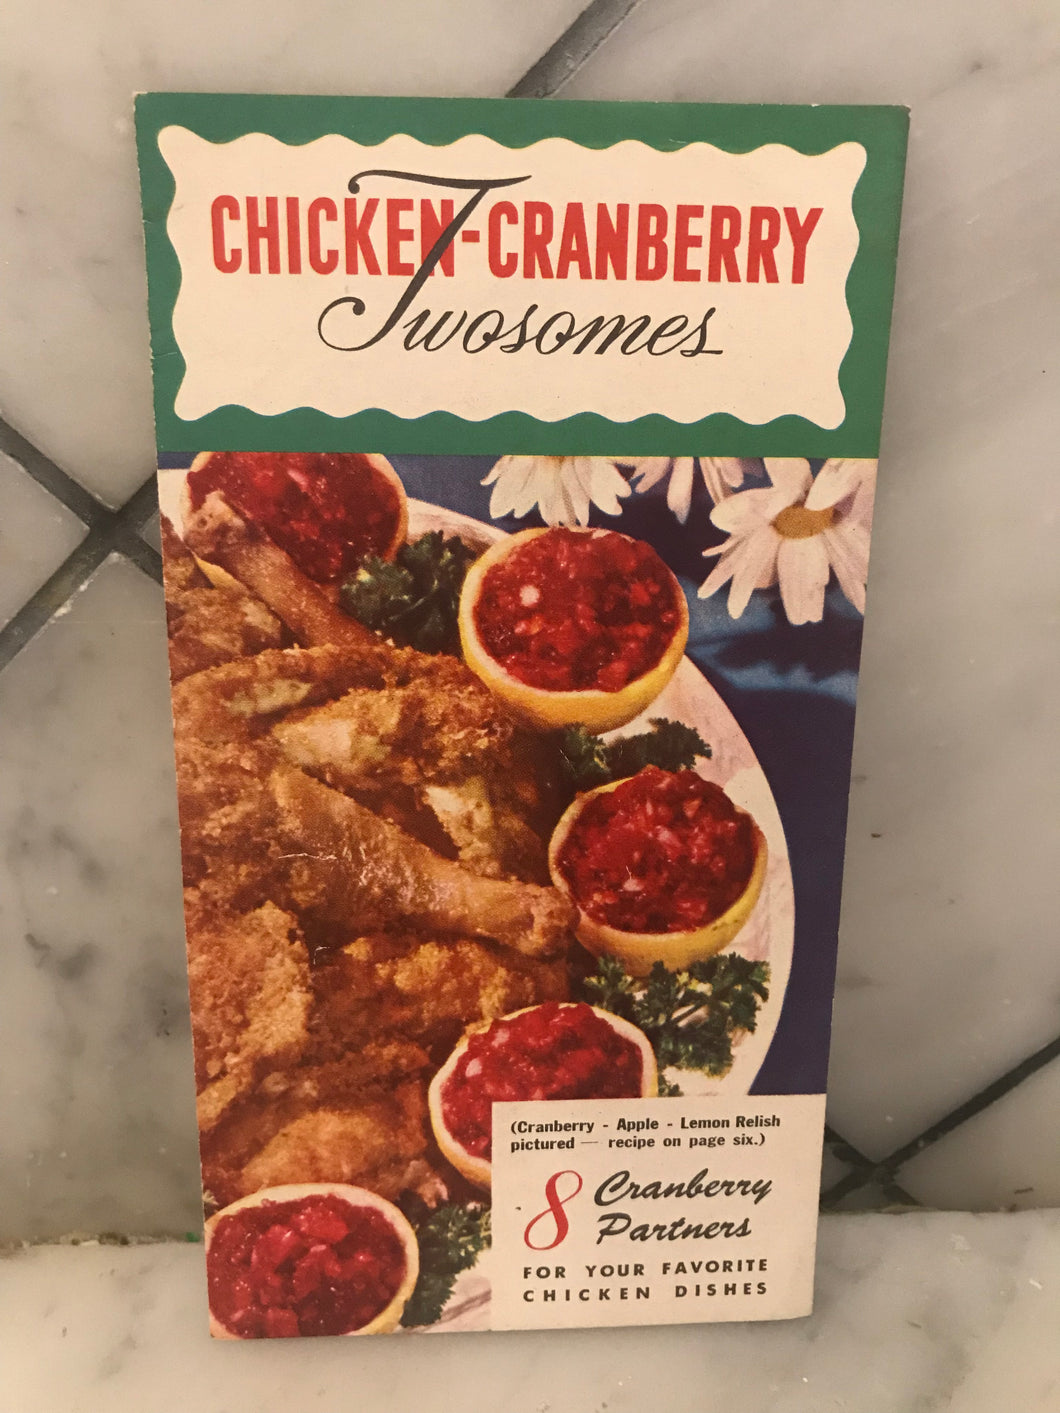 Chicken-Cranberry Twosomes